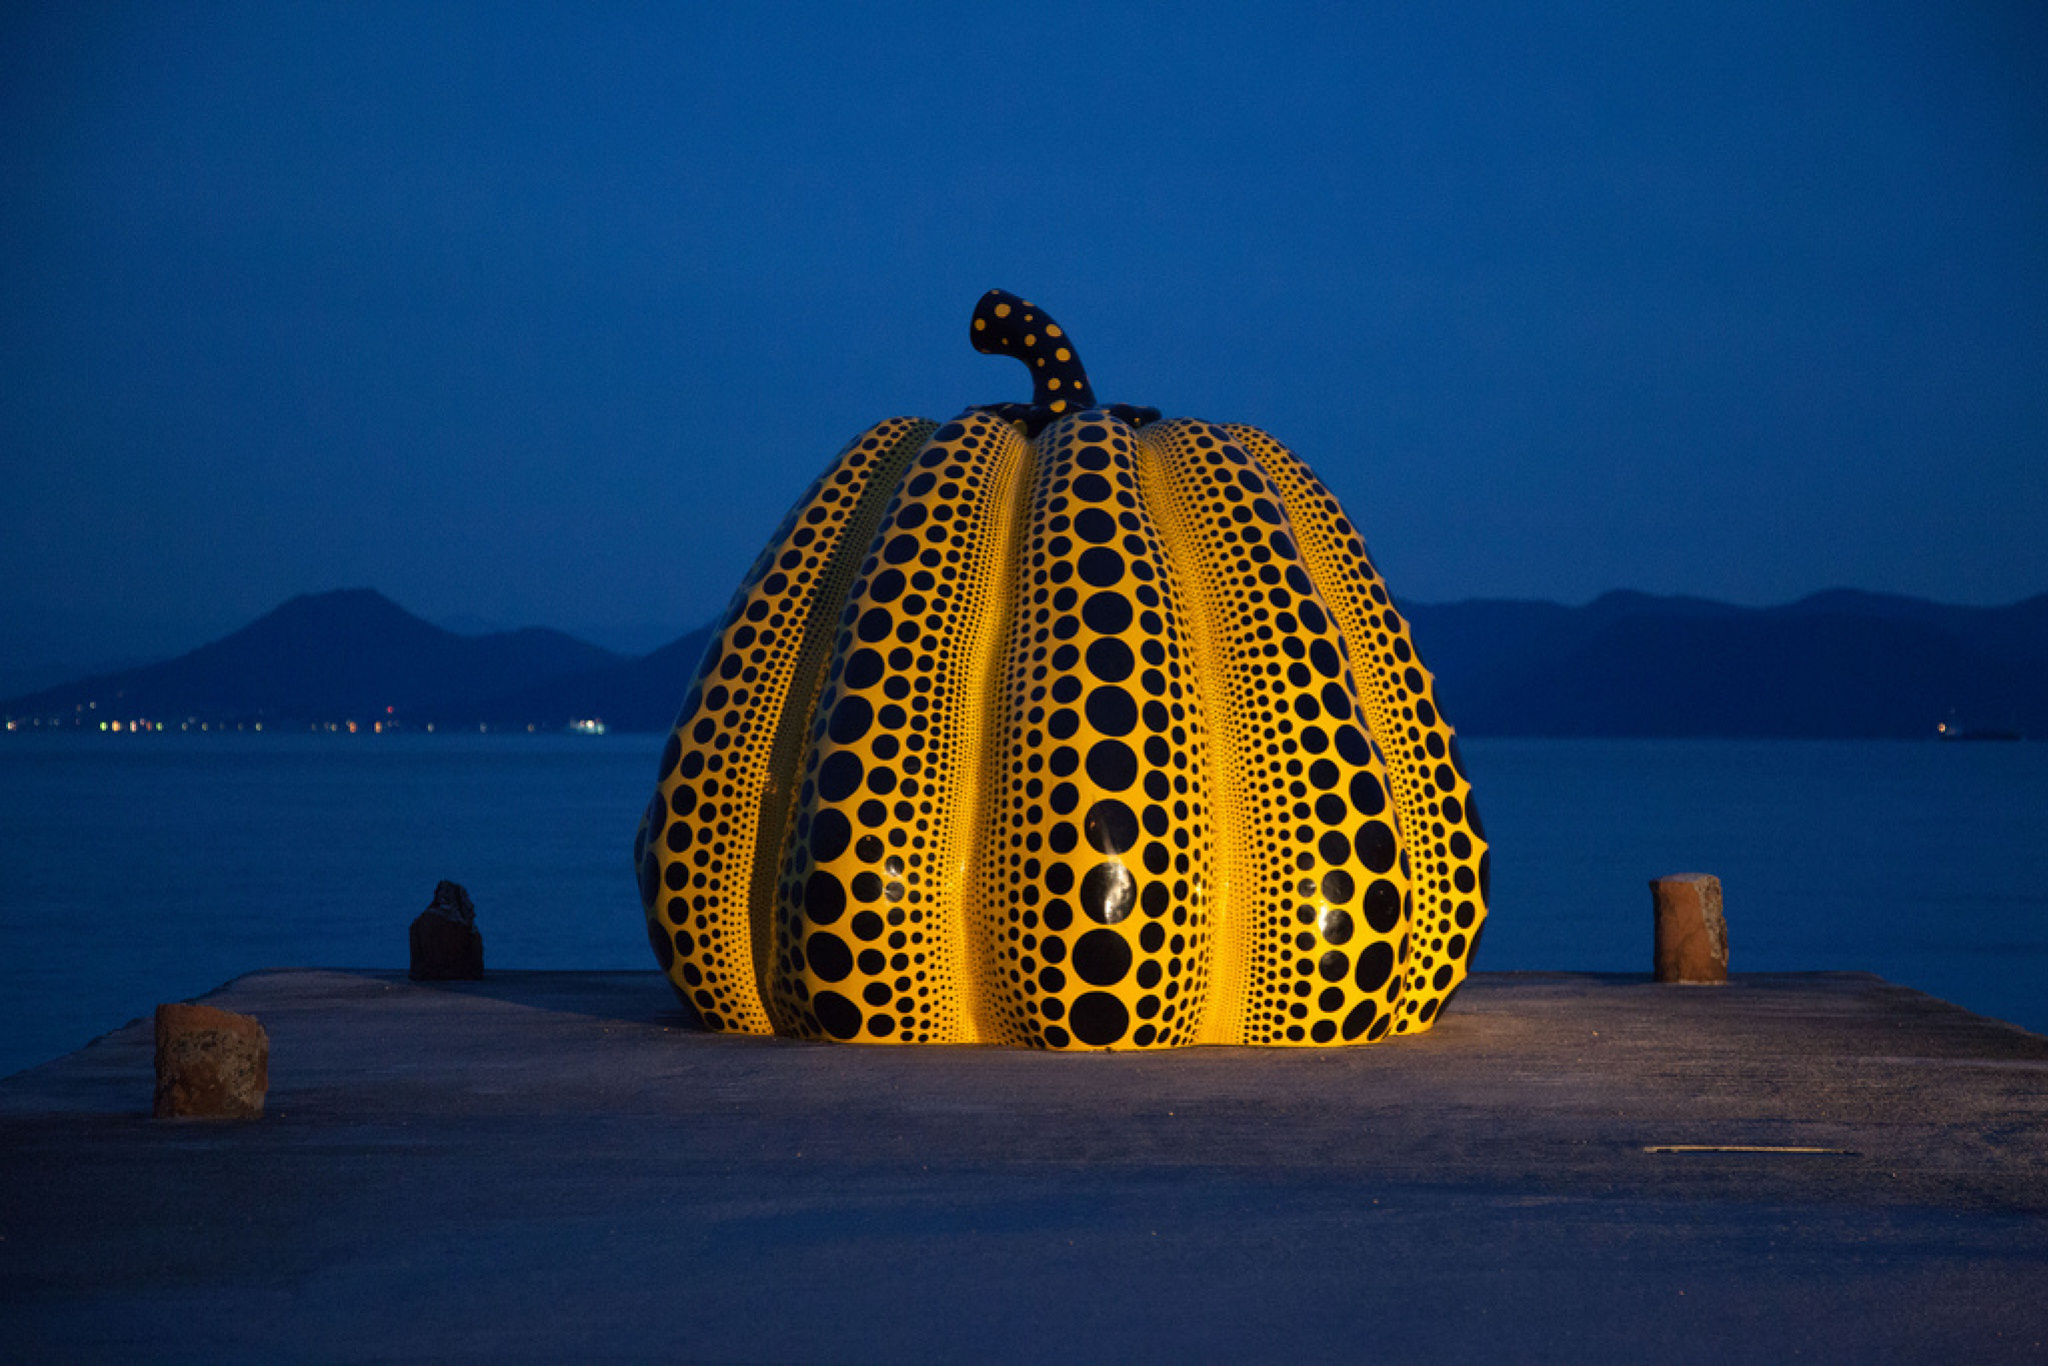 Yayoi Kusama's pumpkins land in downtown Milan - Domus